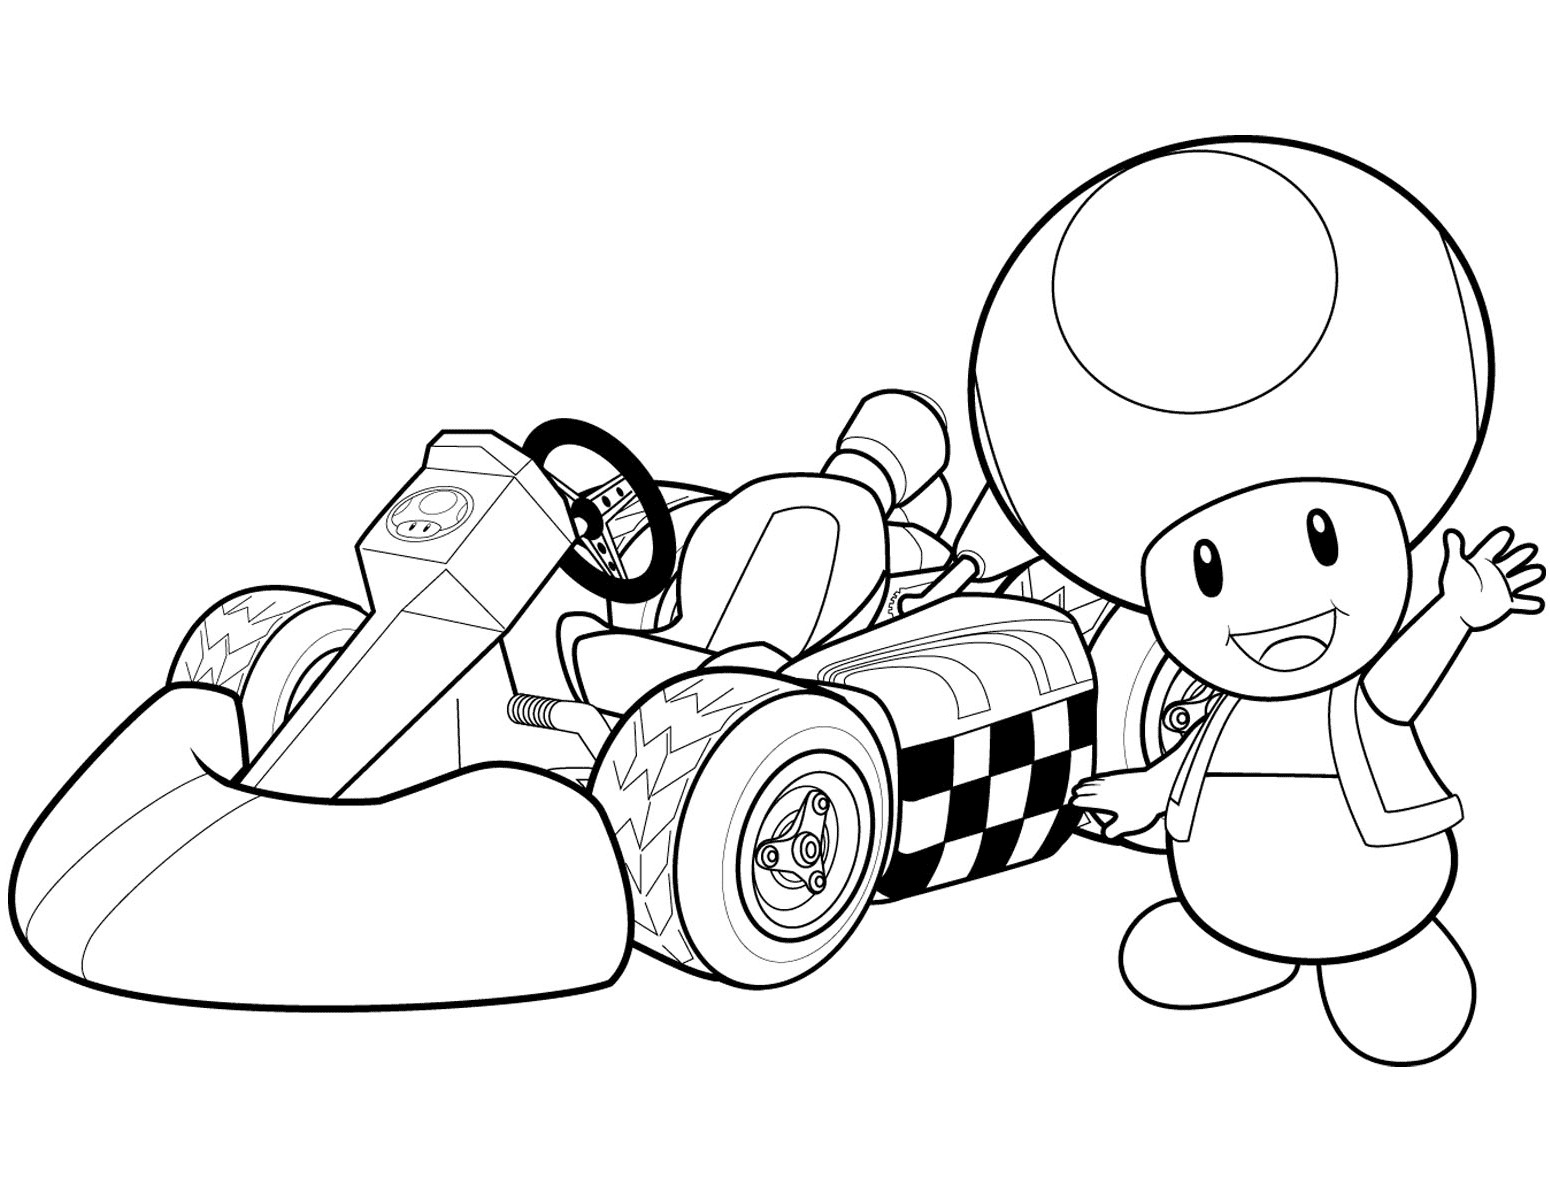 Жаба и его гоночная машина в Mario Kart Wii от Toad Mario